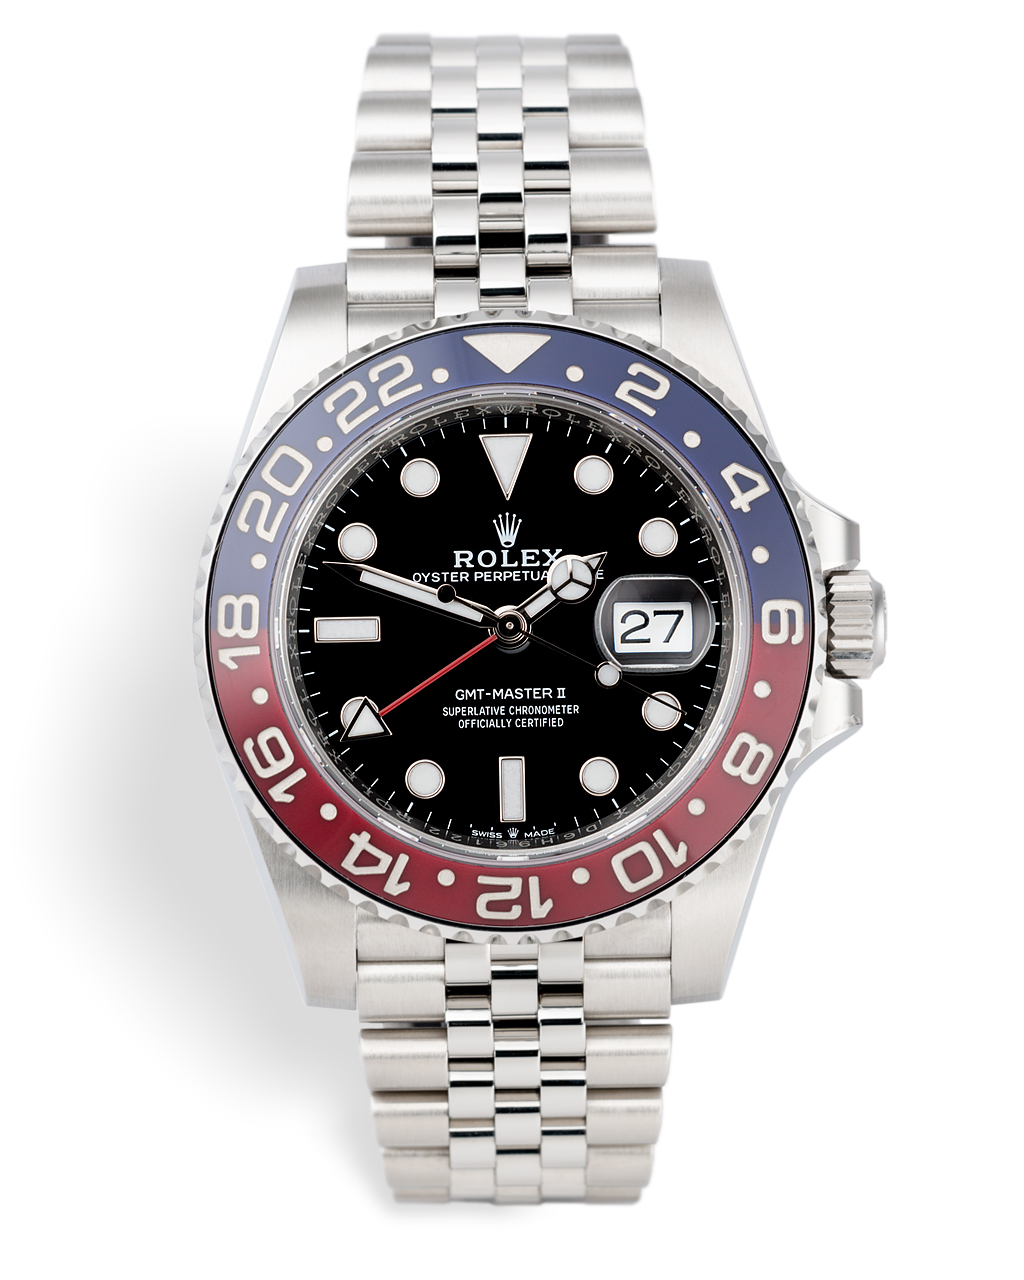 Rolex GMT-Master II Watches | ref 126710BLRO | Rolex Warranty to 2024 ...